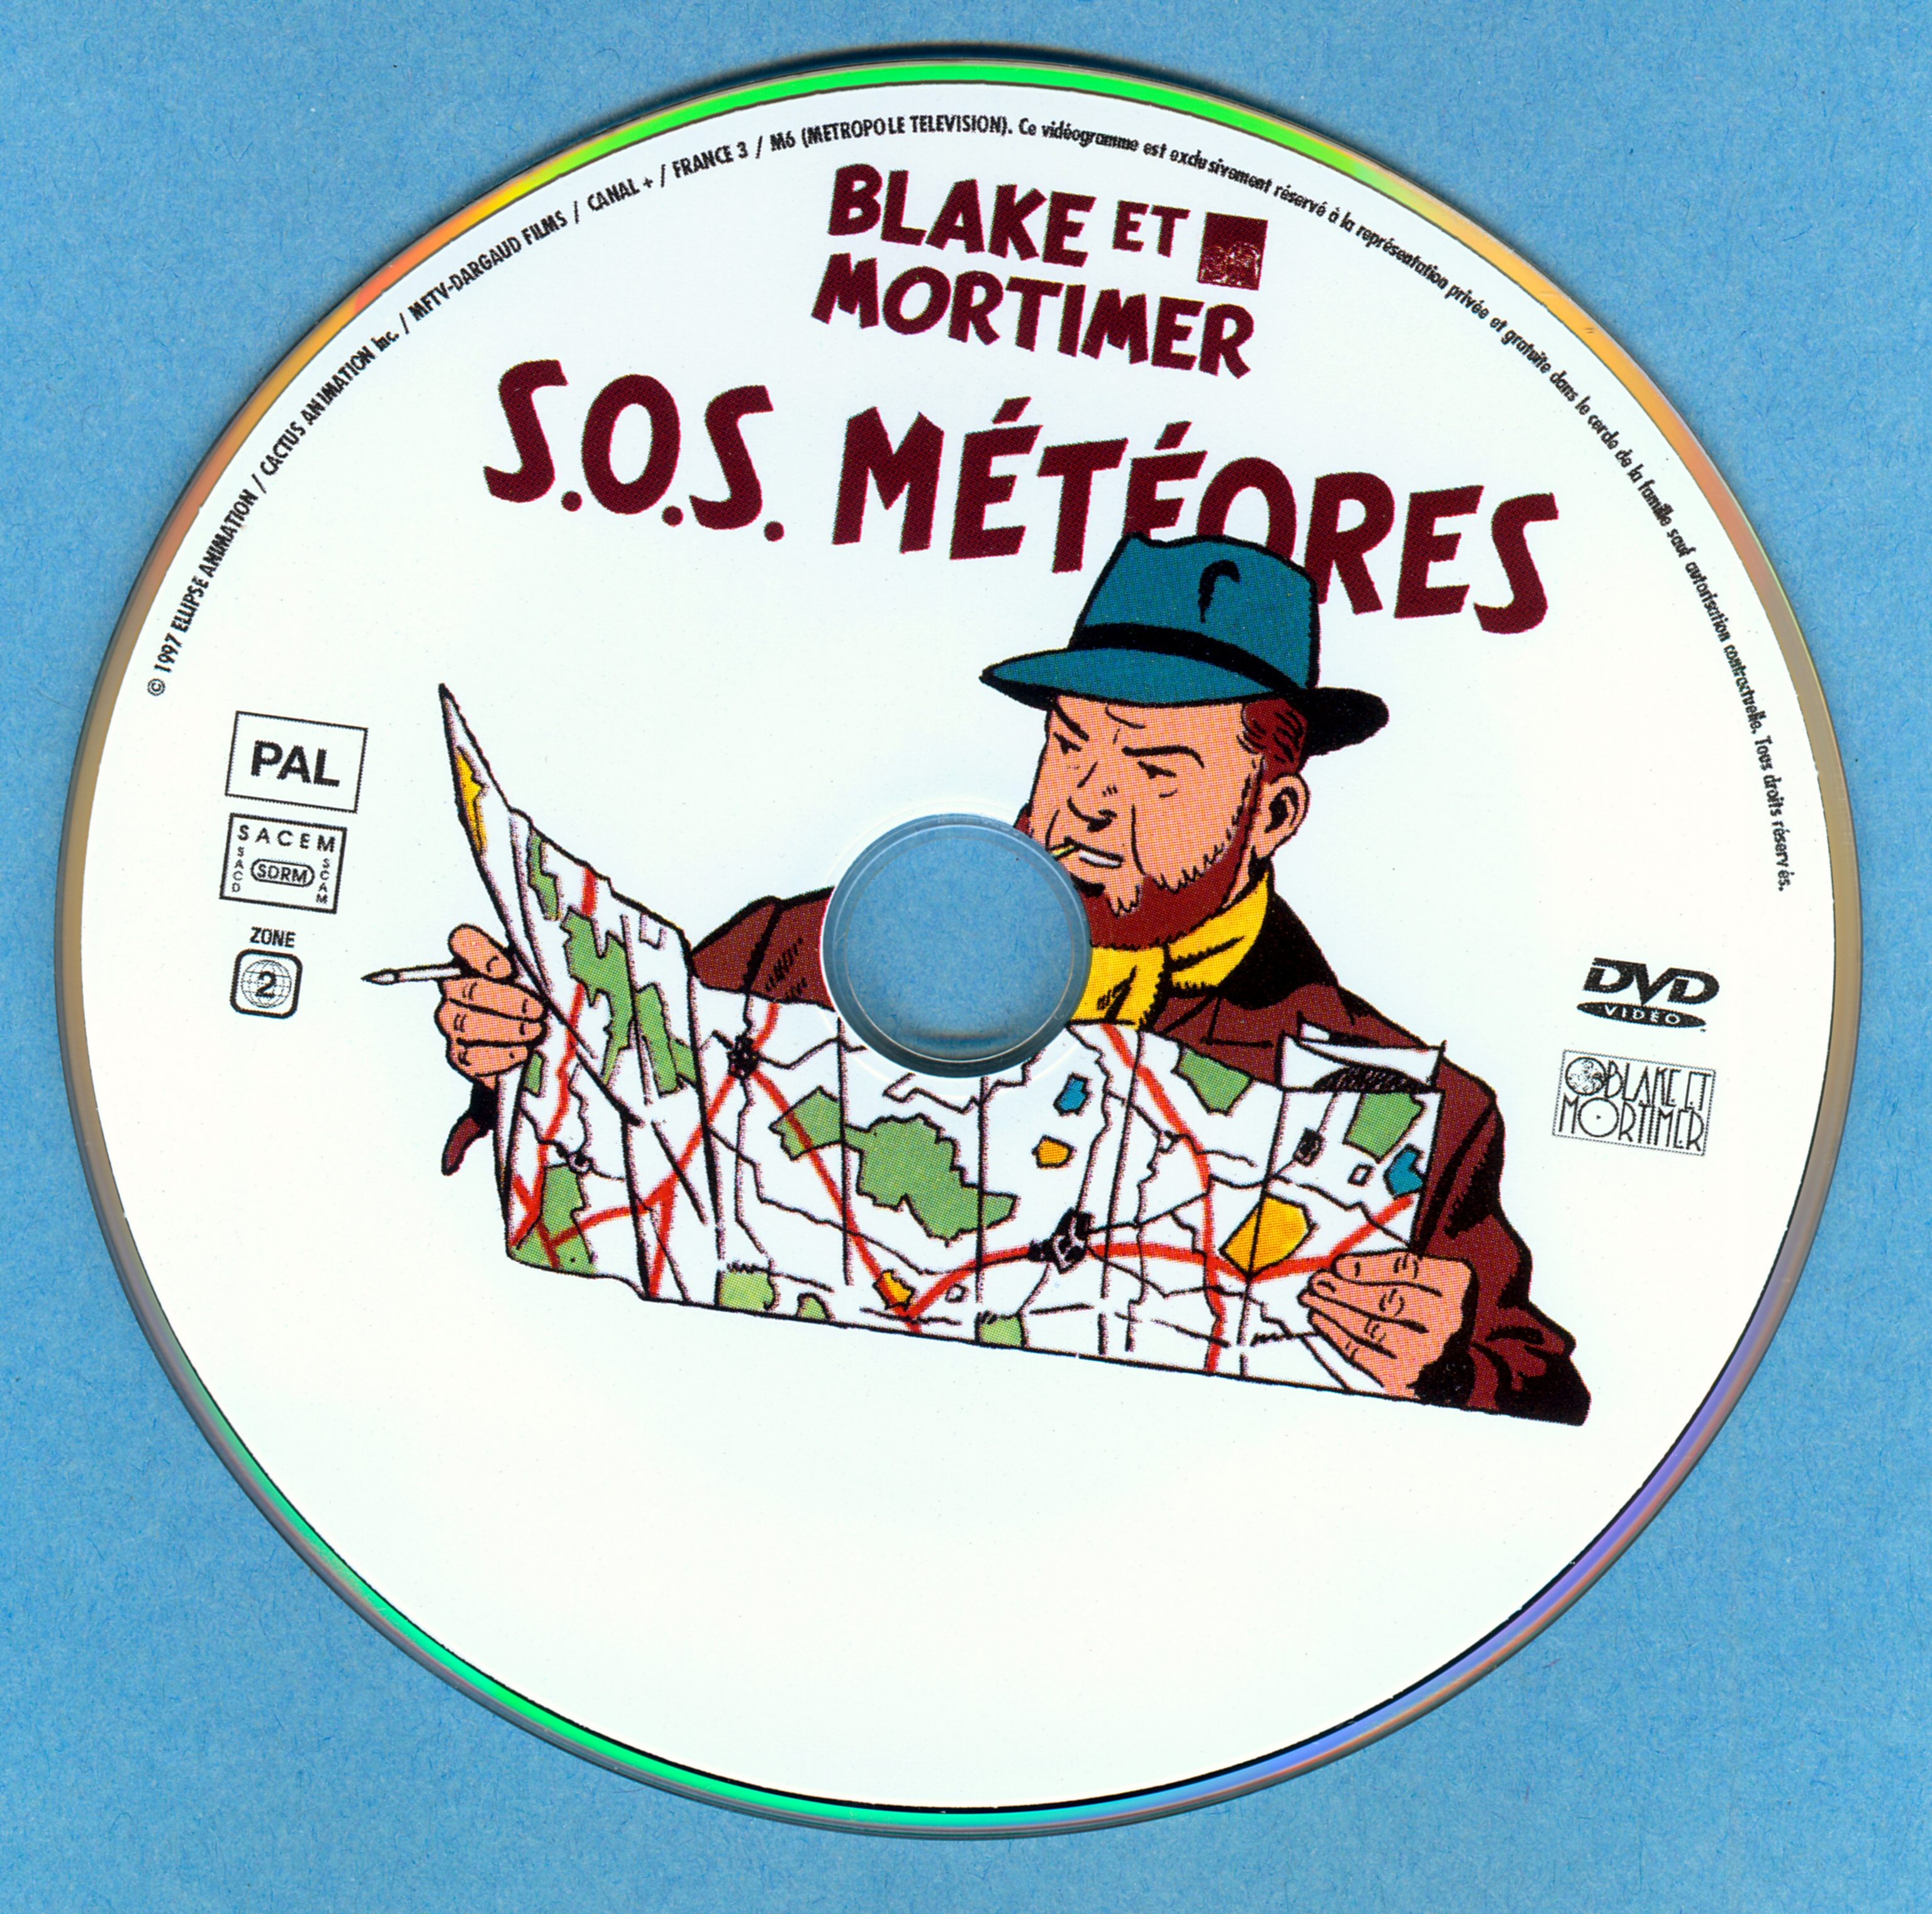 Blake et Mortimer SOS Meteores